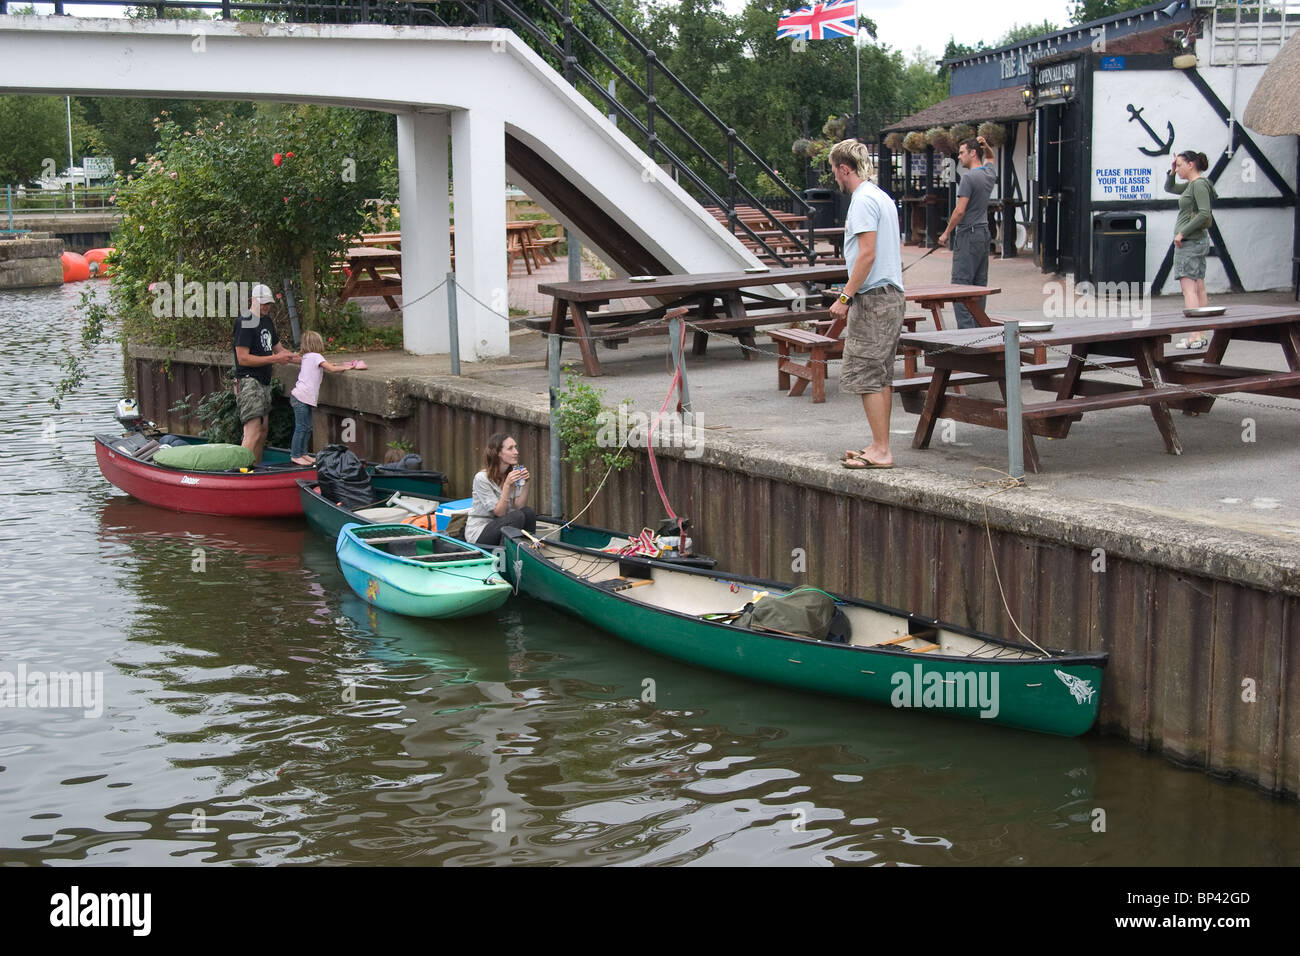 Kanusport Kanute Liegeplatz sprechen Pub Fluss besuchen Stockfoto